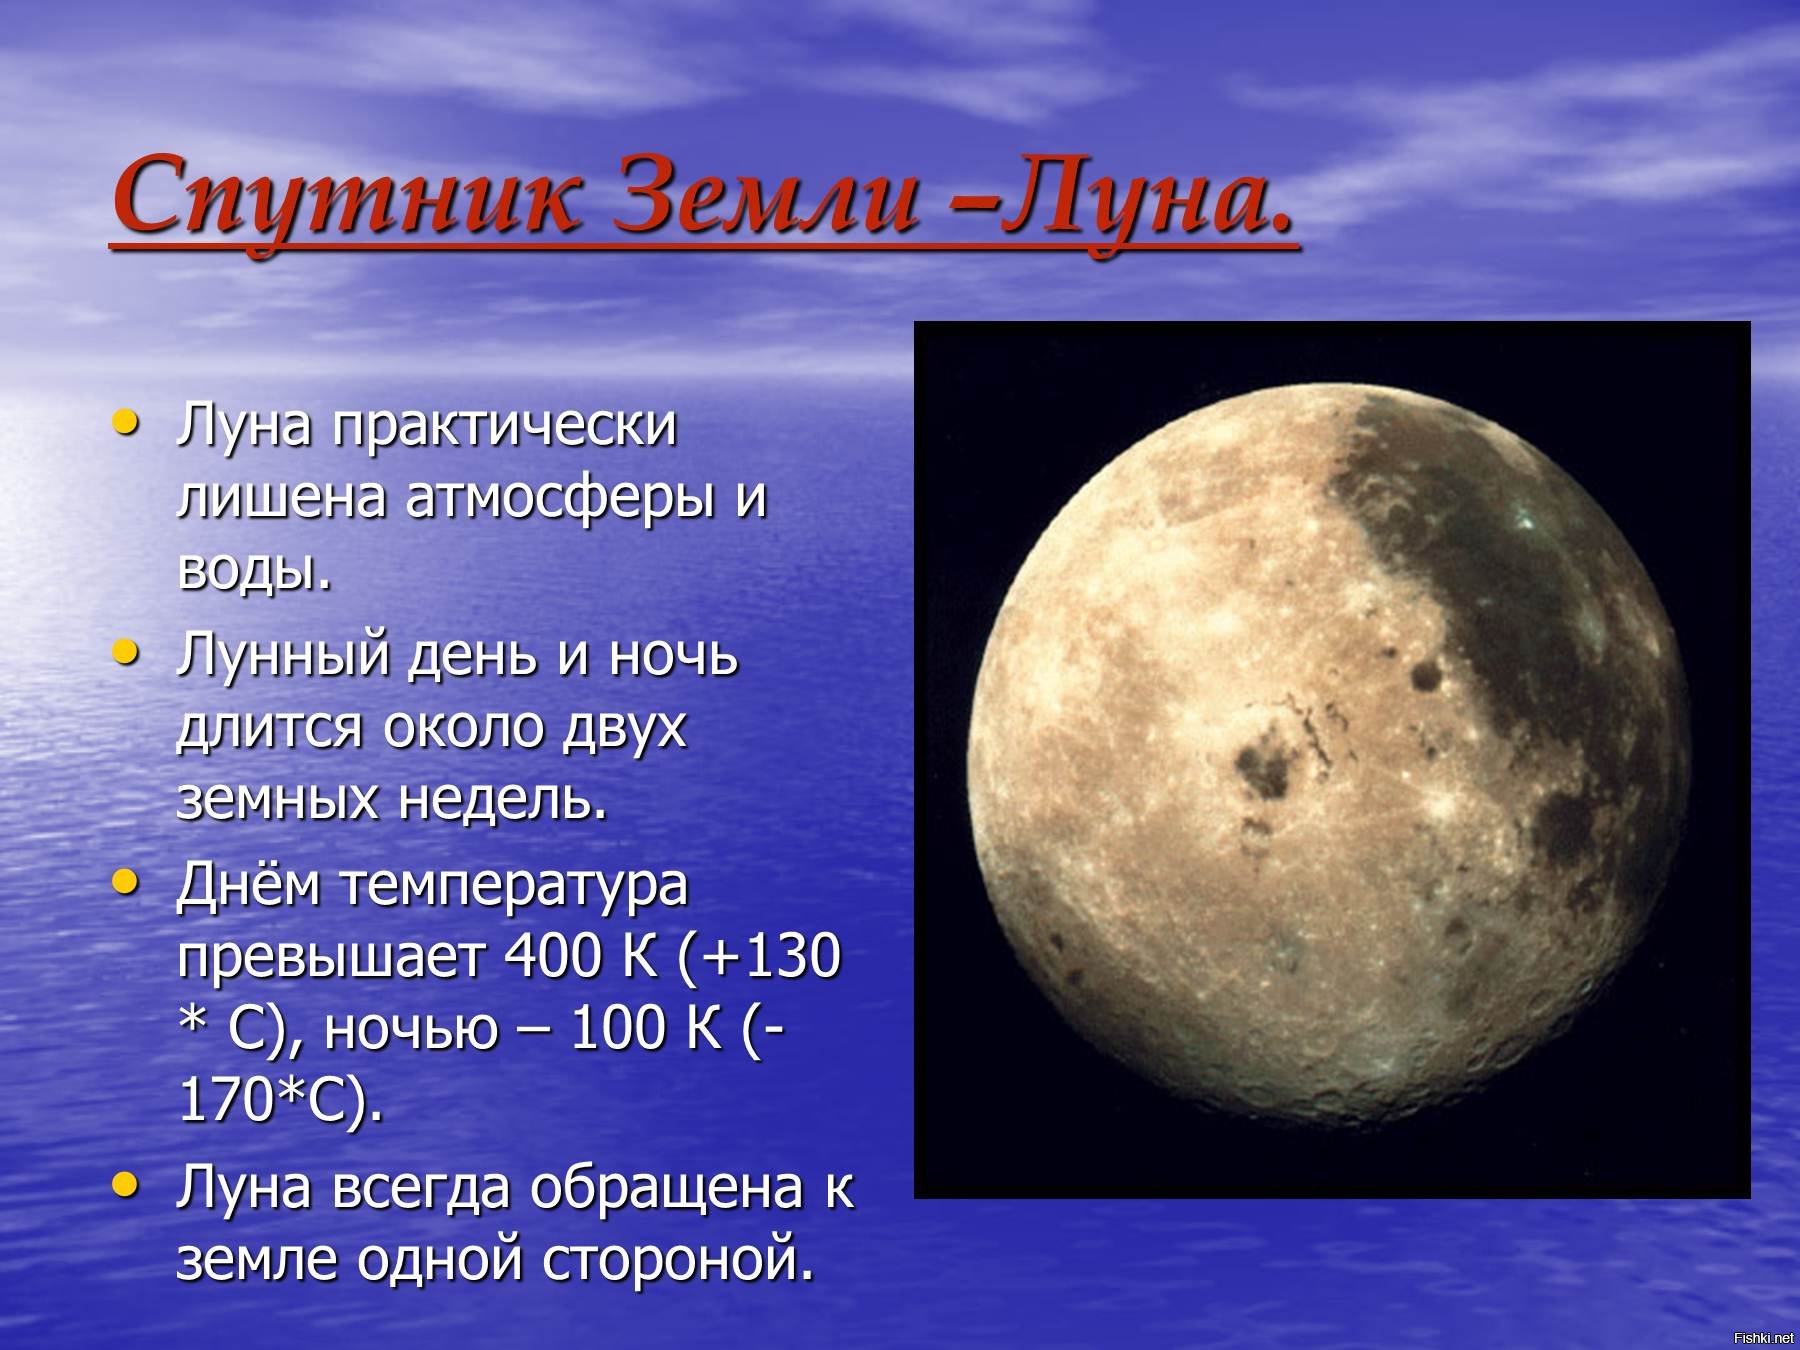 Луна это планета солнечной системы. Луна Спутник земли. Луна Спутник солнца. Луна Планета солнечной системы. Солнечная система Луна Спутник земли.